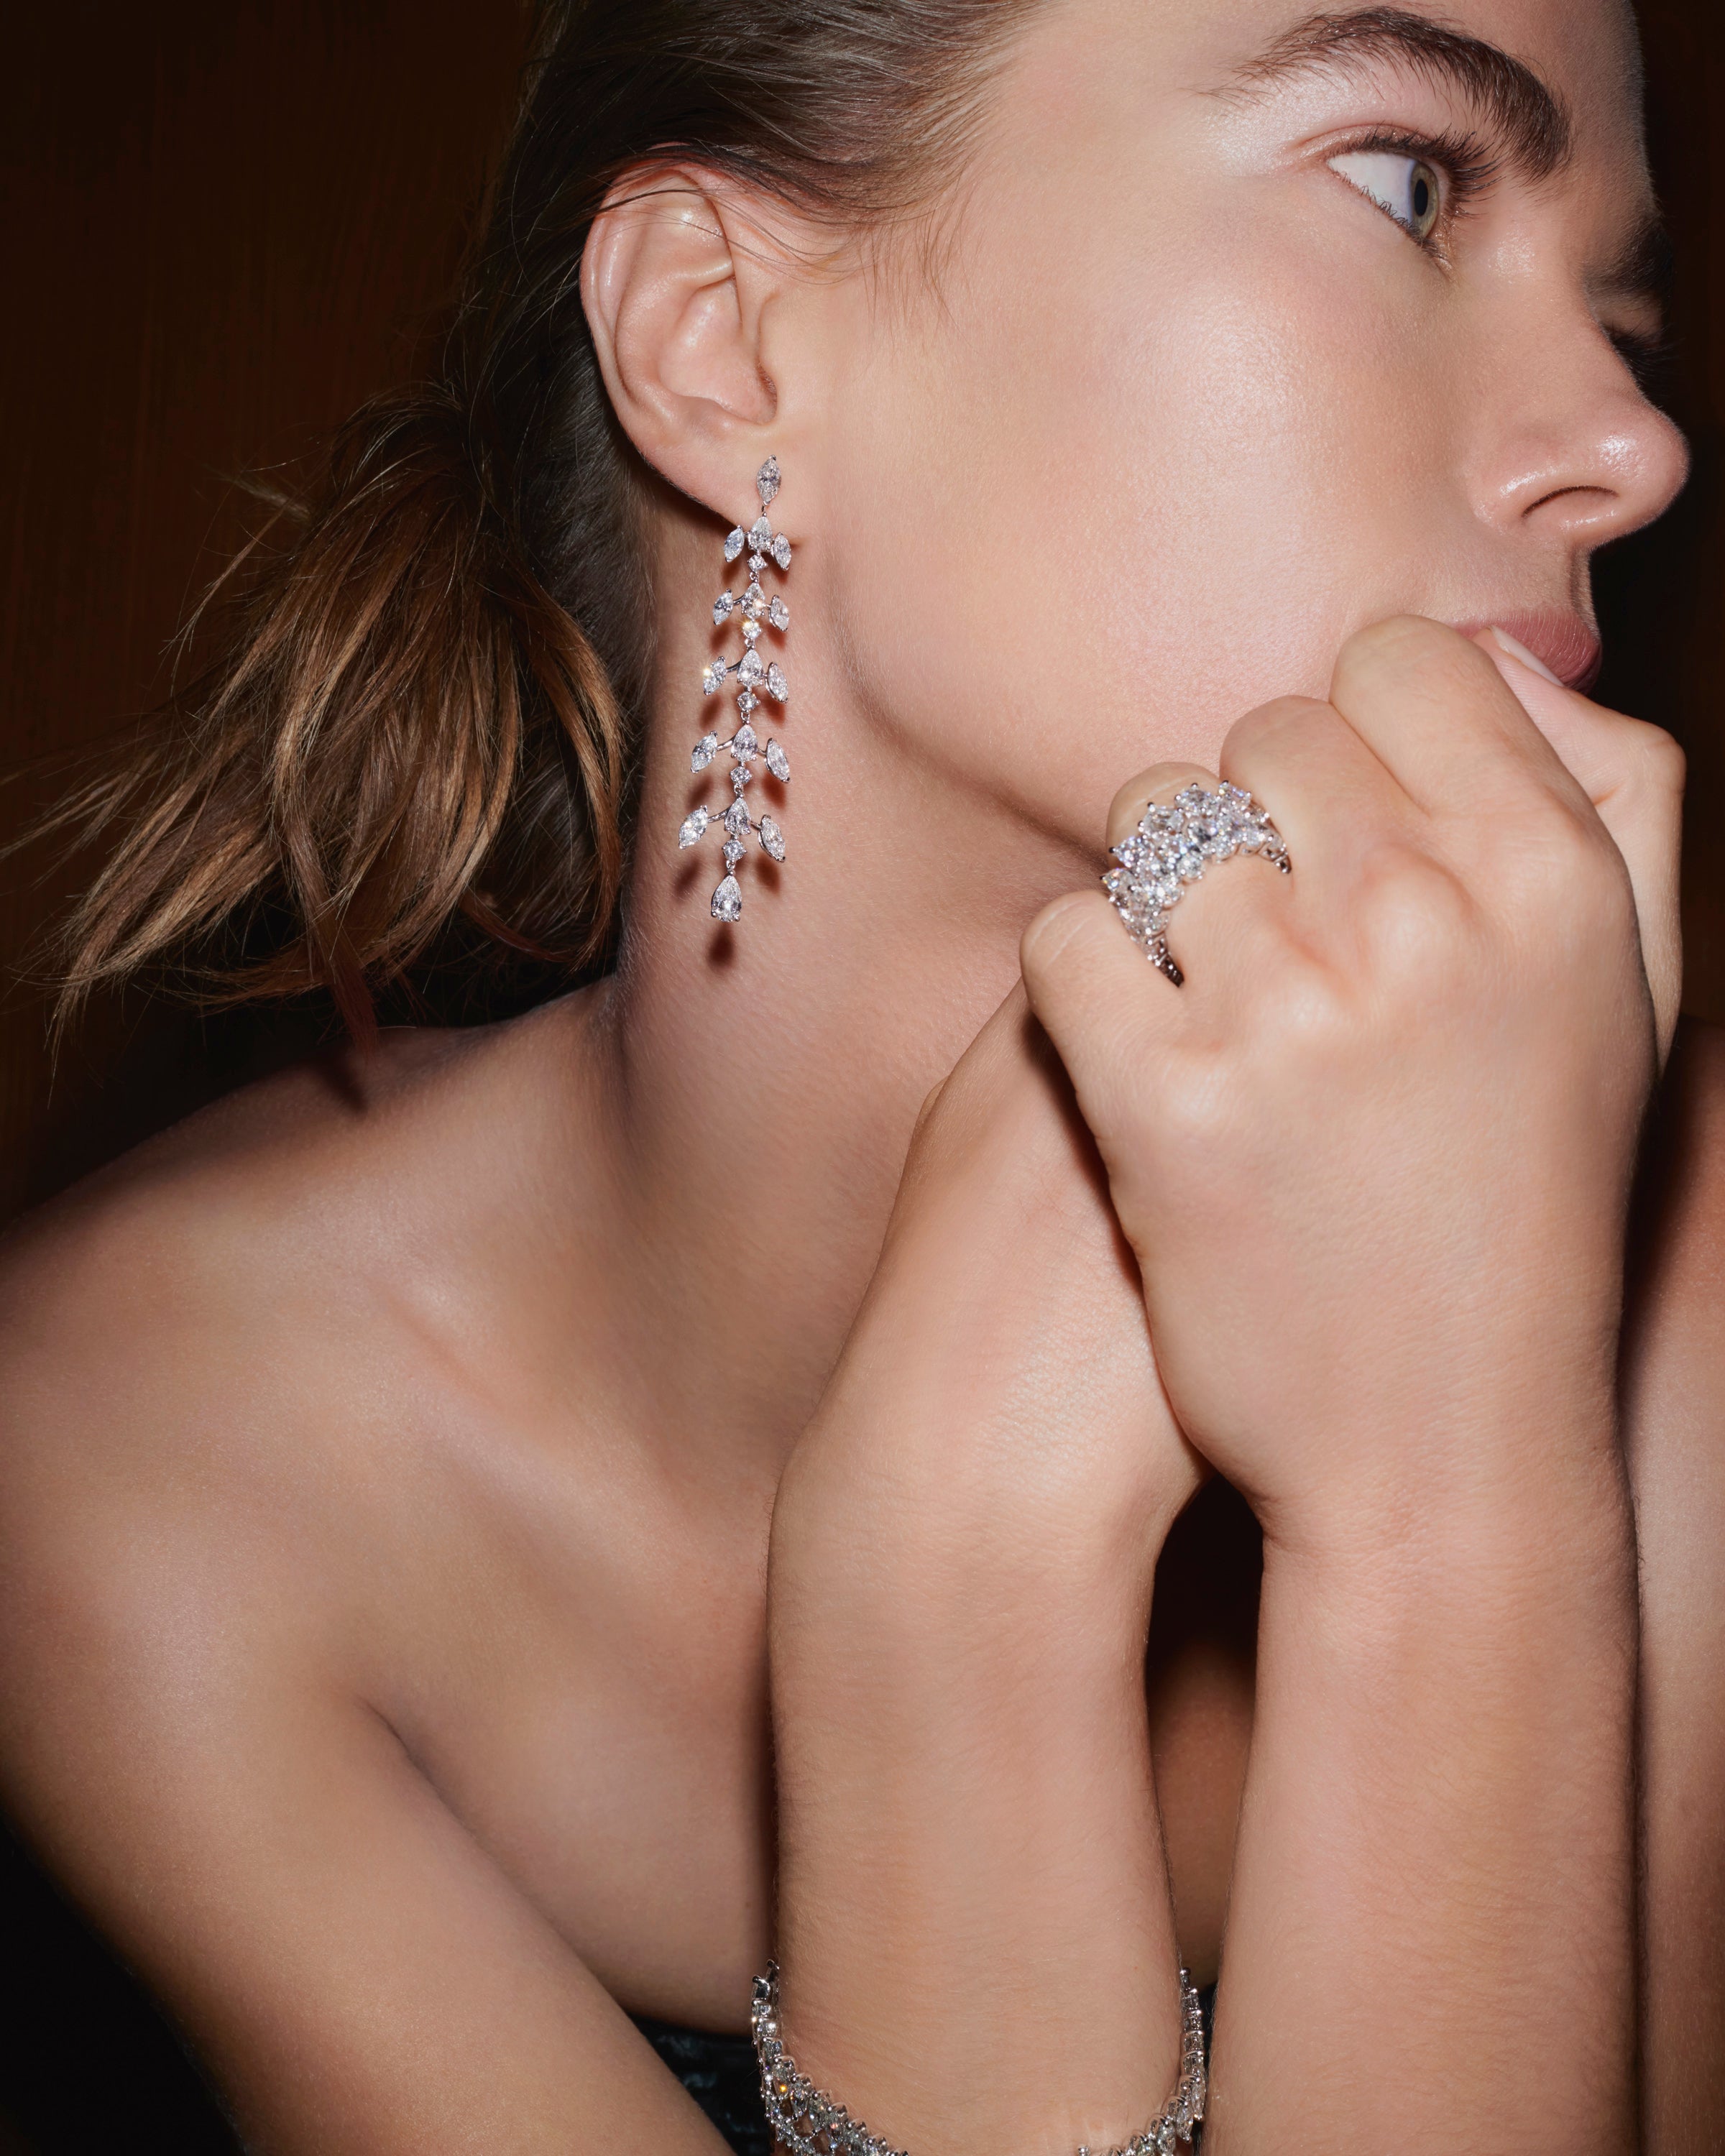 The Sirène Earrings